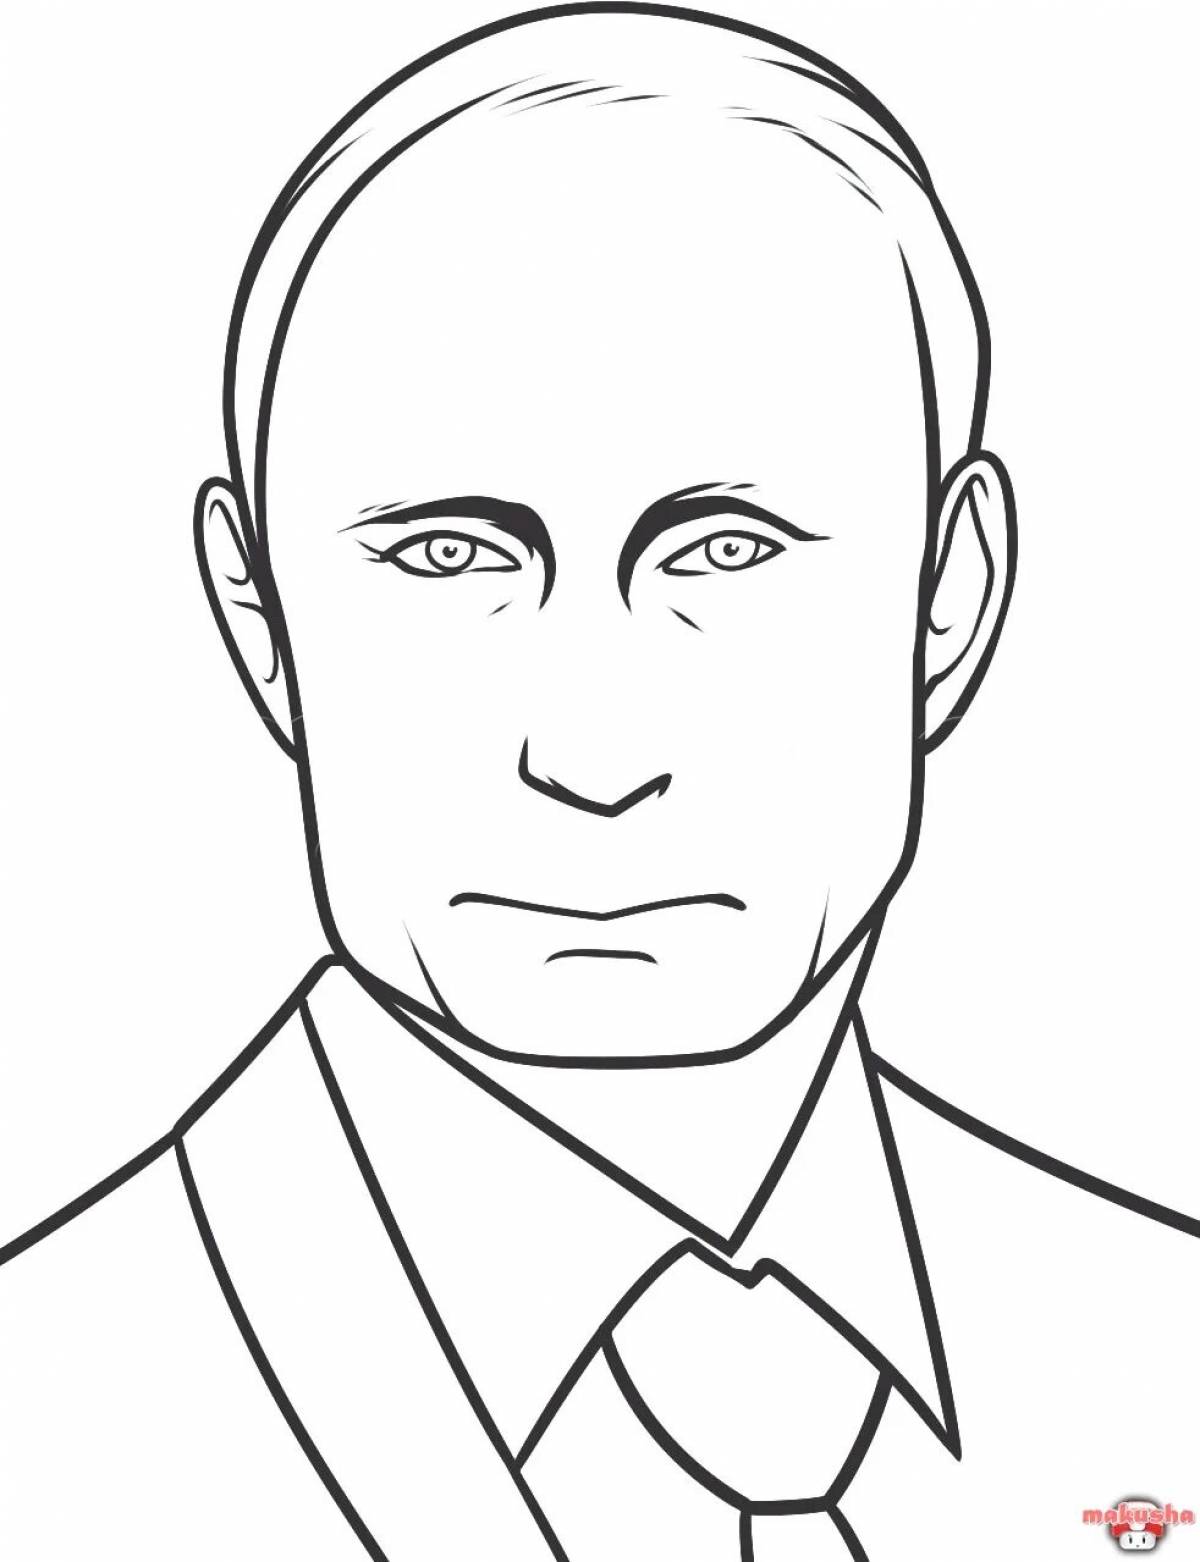 Putin Vladimir Vladimirovich #12